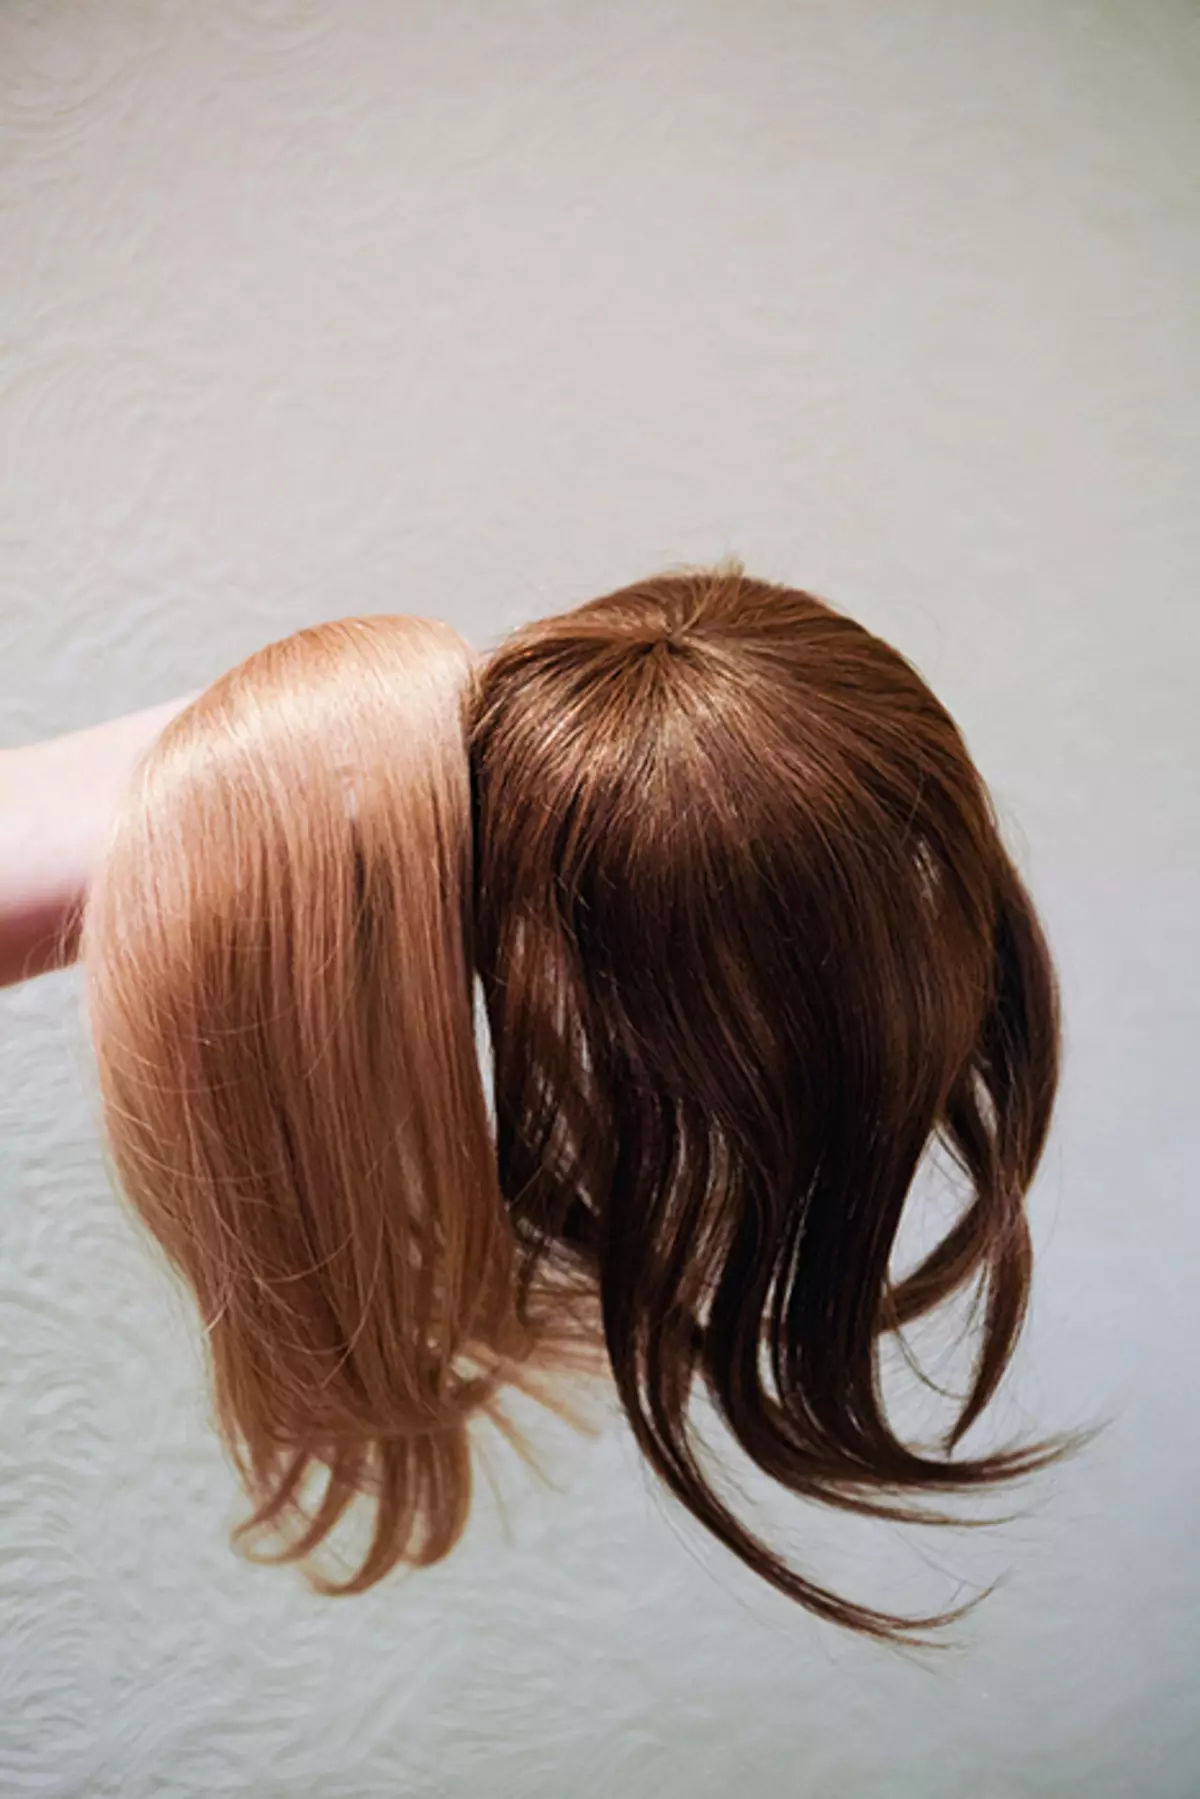 વાળ કાપ્યા વગર કેવી રીતે bangs બનાવવા માટે? હેરકટ વગર પૂંછડી અને લાંબા વાળથી બેંગ્સની નકલની સુવિધાઓ. કાતર વગર અસ્થાયી બેંગ કેવી રીતે બનાવવું? 5891_16